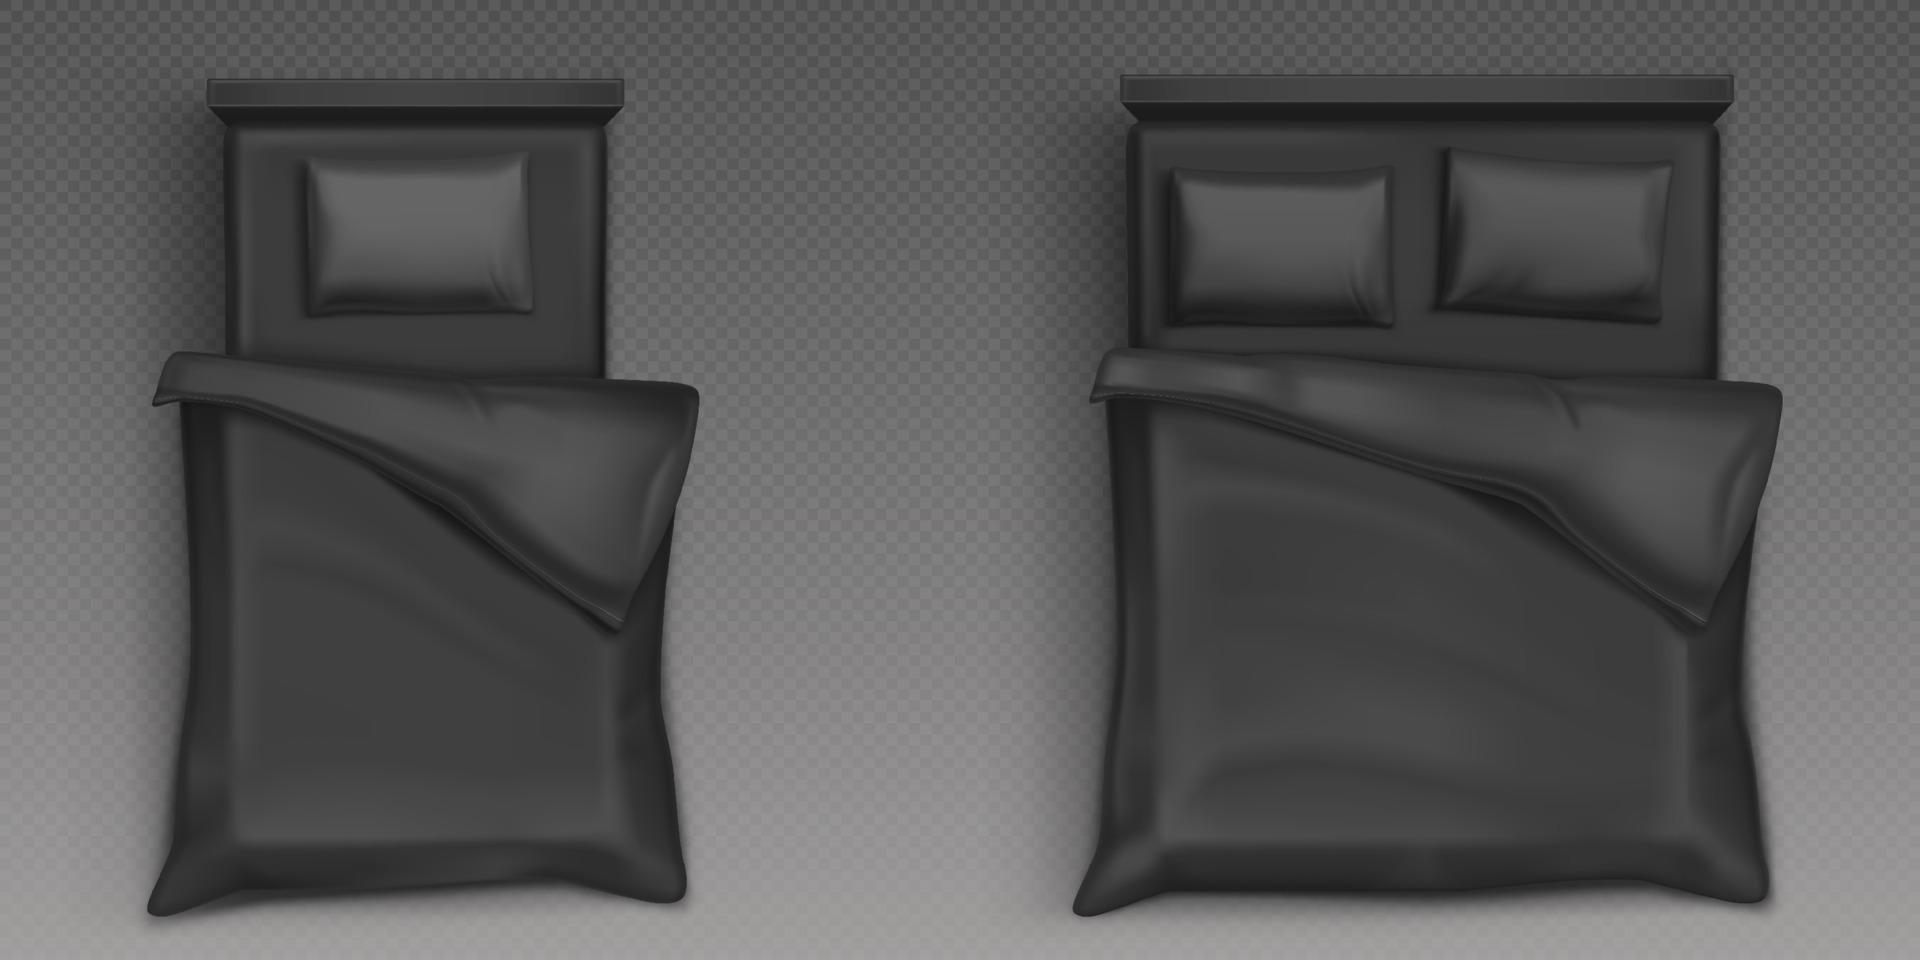 Einzel- und Doppelbetten mit schwarzem Leinen von oben vektor